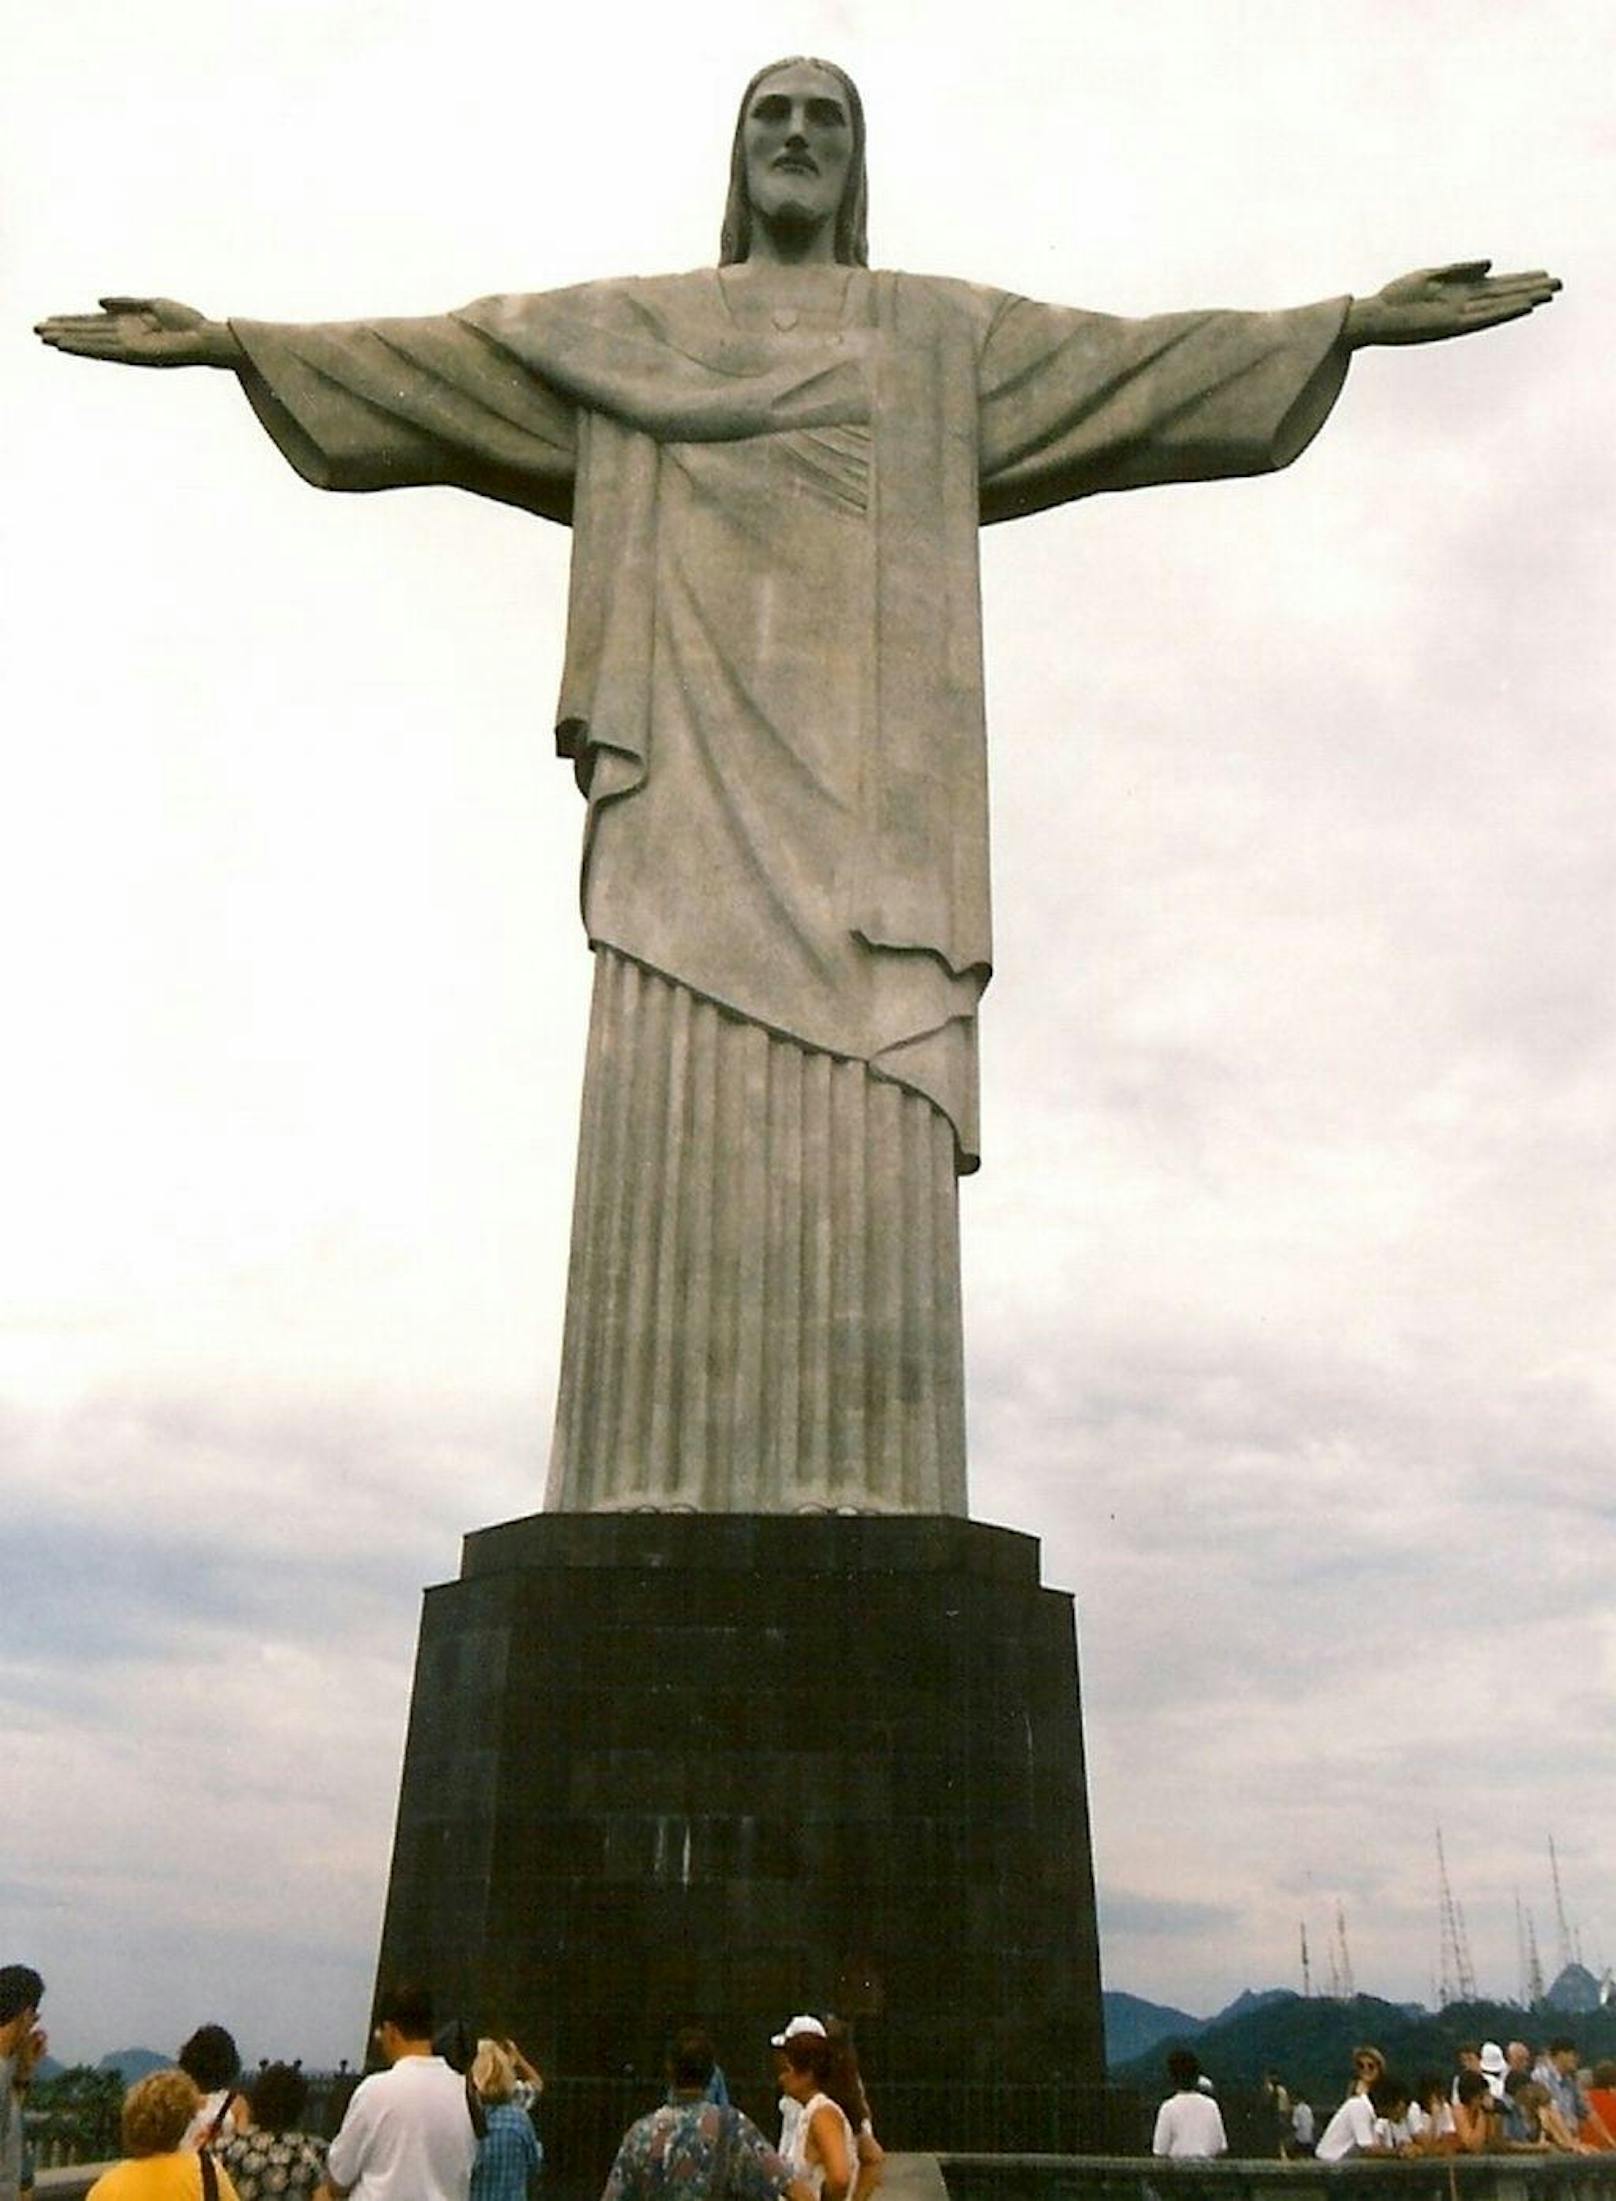 <b>Christus-Statue in Rio de Janeiro:</b>
Der brasilianische Cristo Redentor ist insgesamt zwar nur zwei Meter größer, aber in Almada macht der 75 Meter hohe Sockel die Gesamtgröße der Statue aus. Beide Figuren bieten jeweils Panoramablicke auf eine Metropole - Rio de Janeiro bzw. Lissabon - und sind als Wallfahrtsorte bekannt.